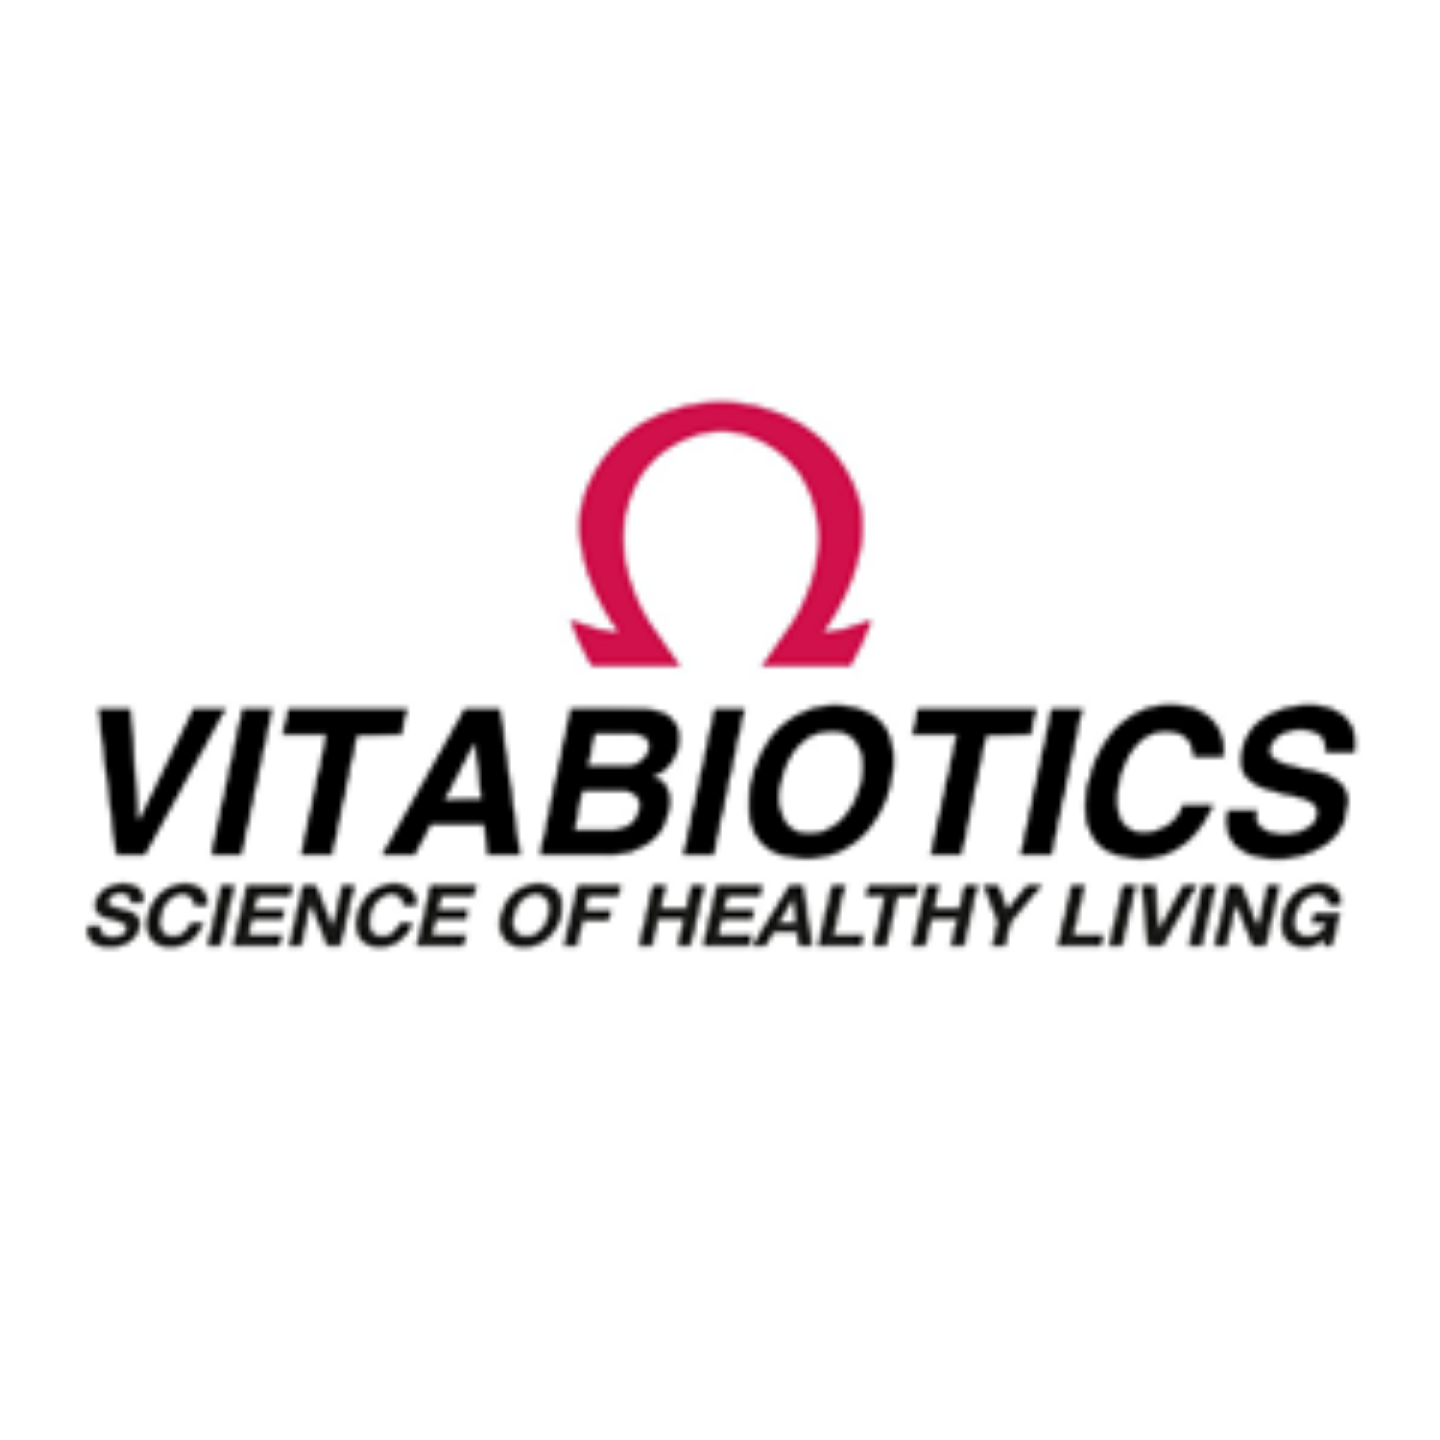 صورة لشركة العلامة التجارية vitabiotics